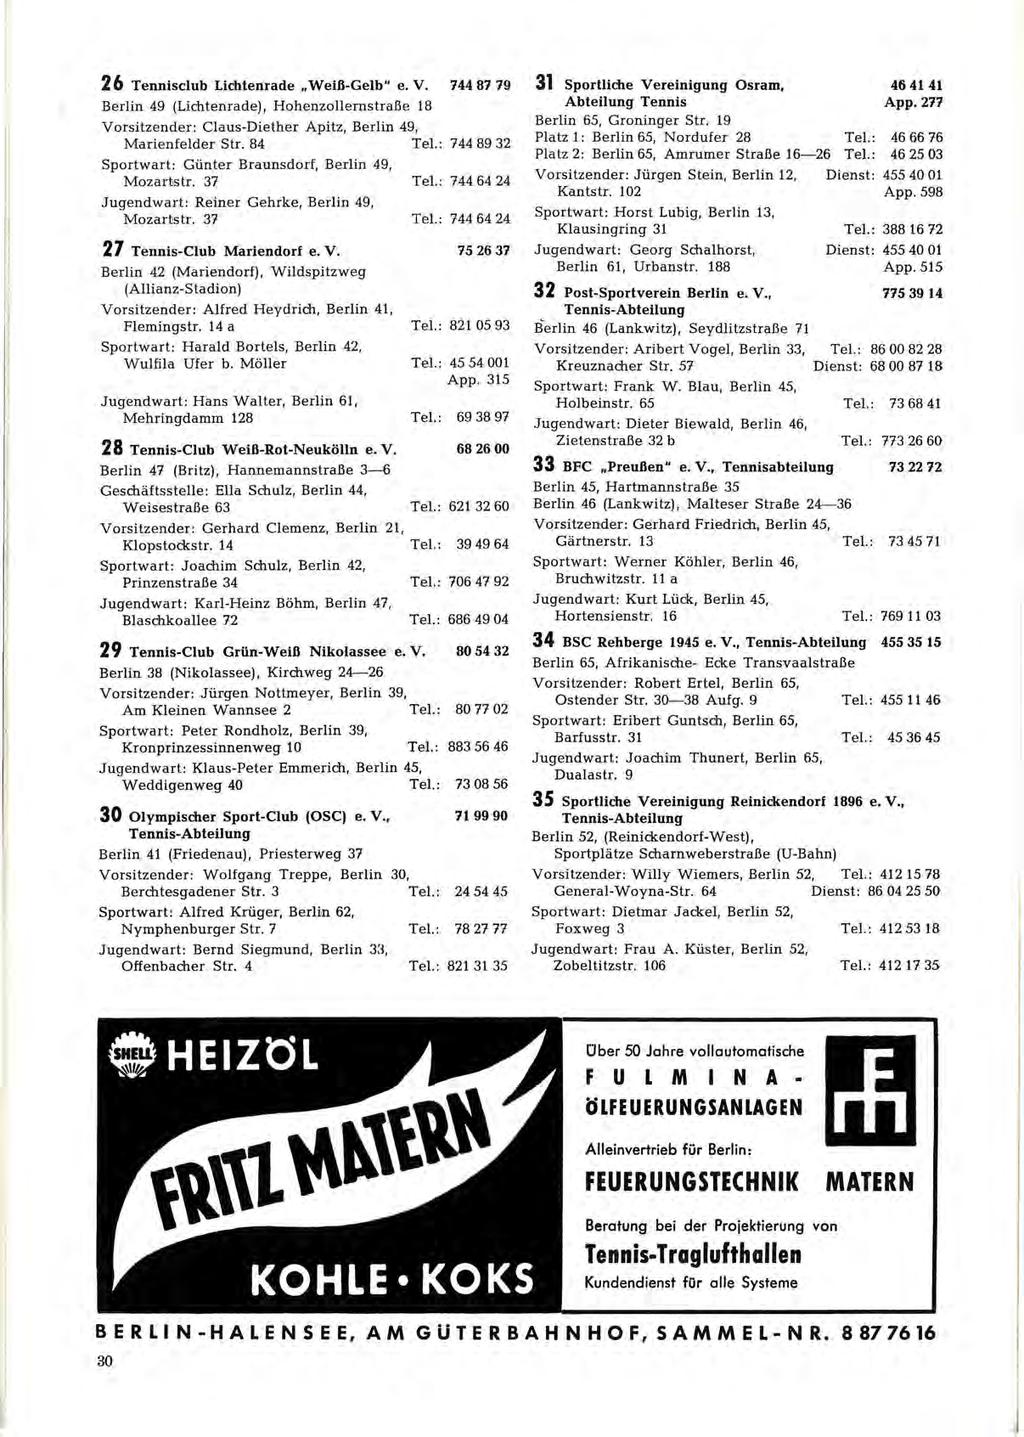 I 26 Tennisclub Lichtenrade "Weiß-Gelb" e. V. 744 87 79 Berlin 49 (Lichtenrade), Hohemollemstraße 18 Vorsitzender: Claus-Diether Apitz, Berlin 49, Marienfelder Str. 84 Tel.